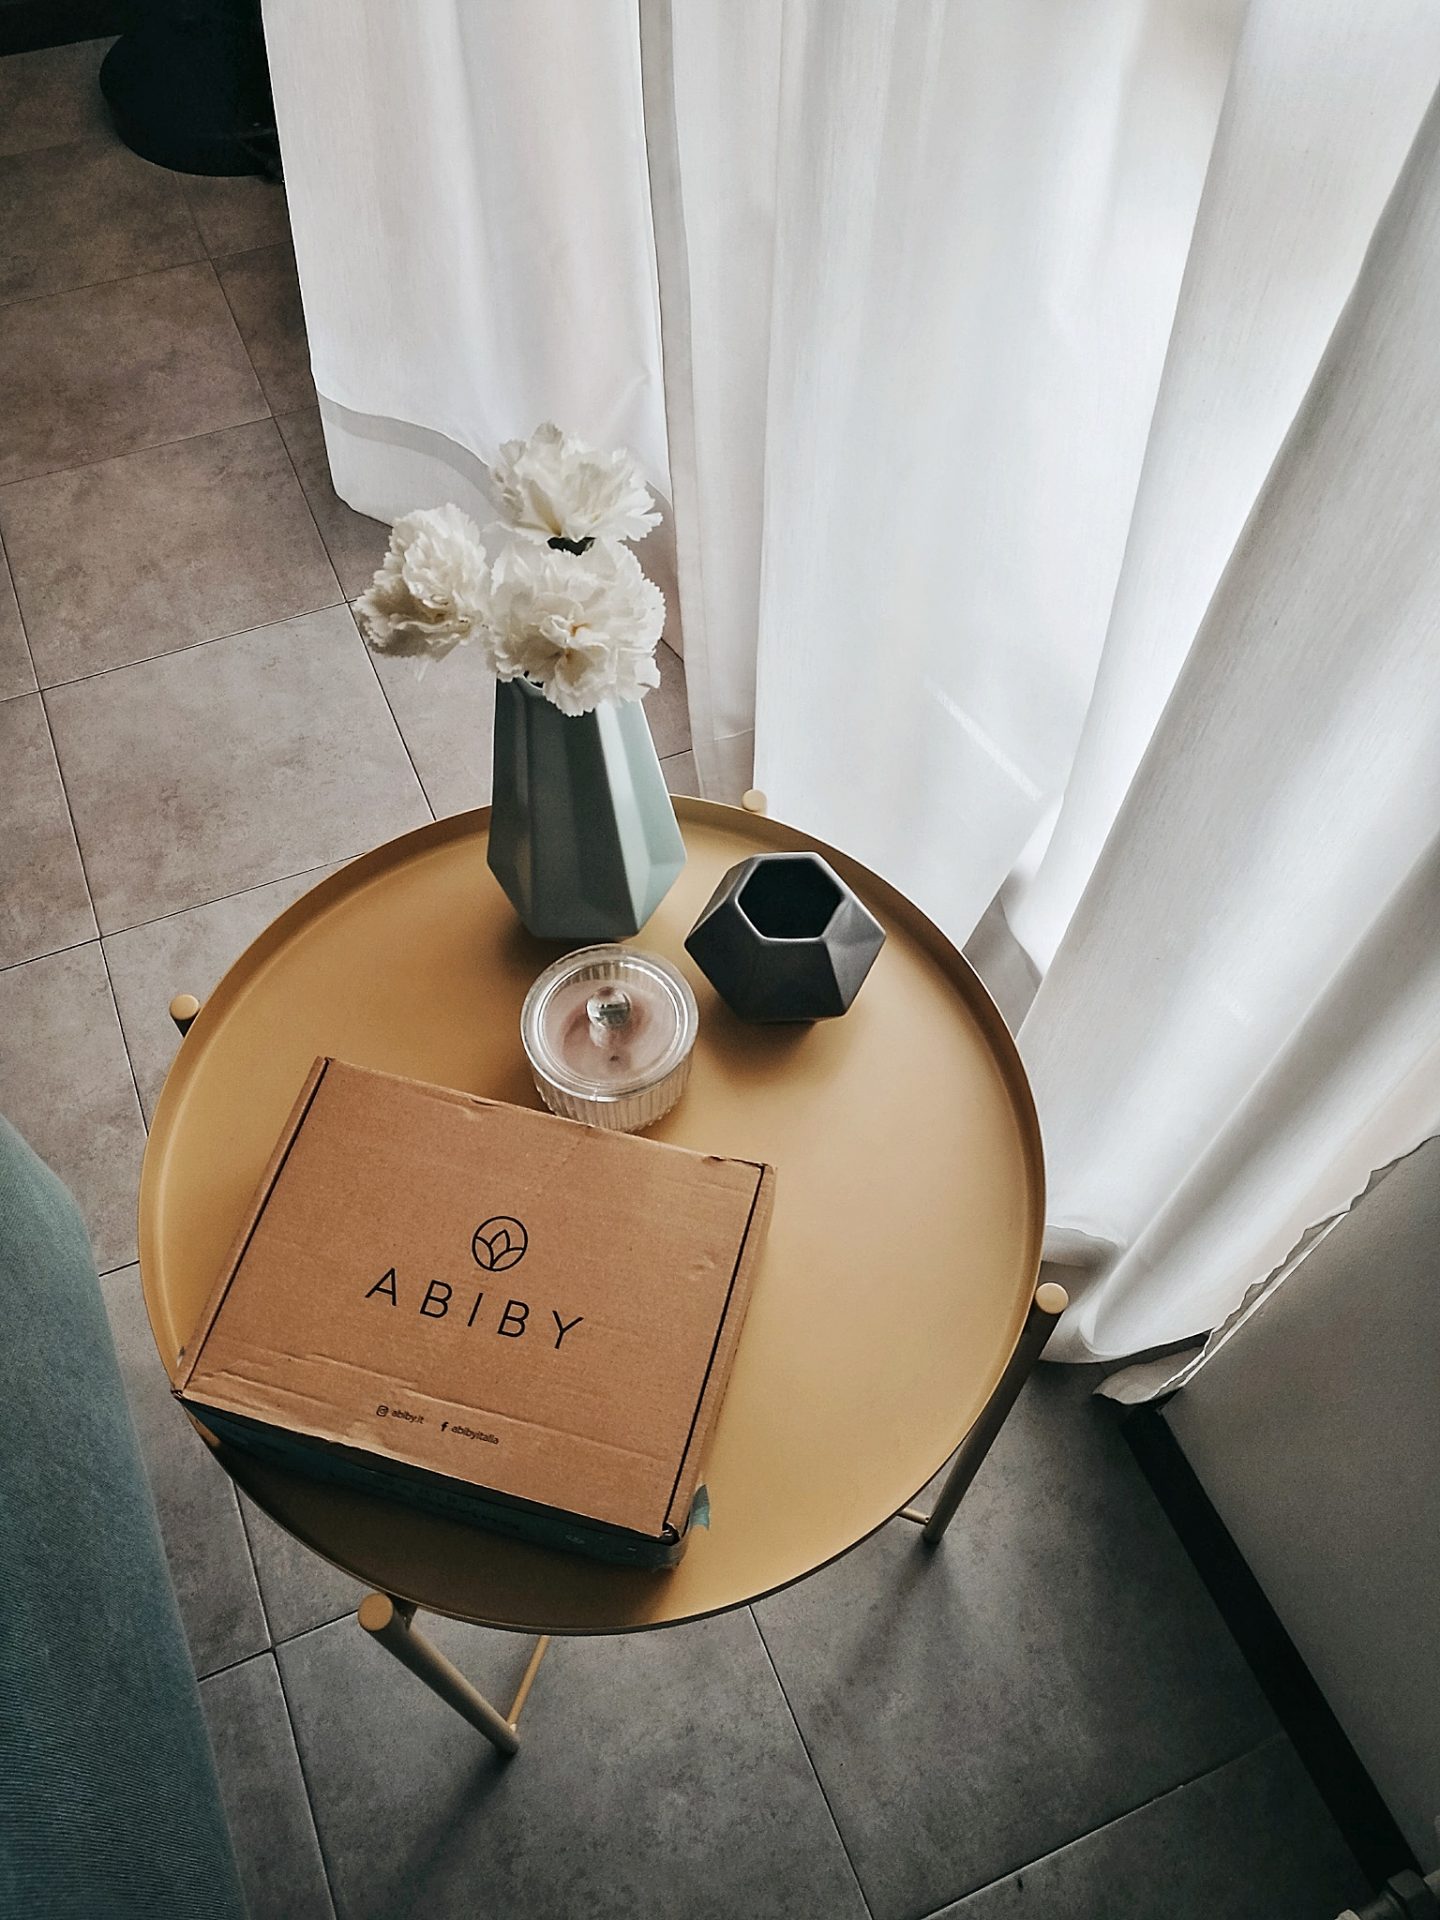 Beauty Box Abiby